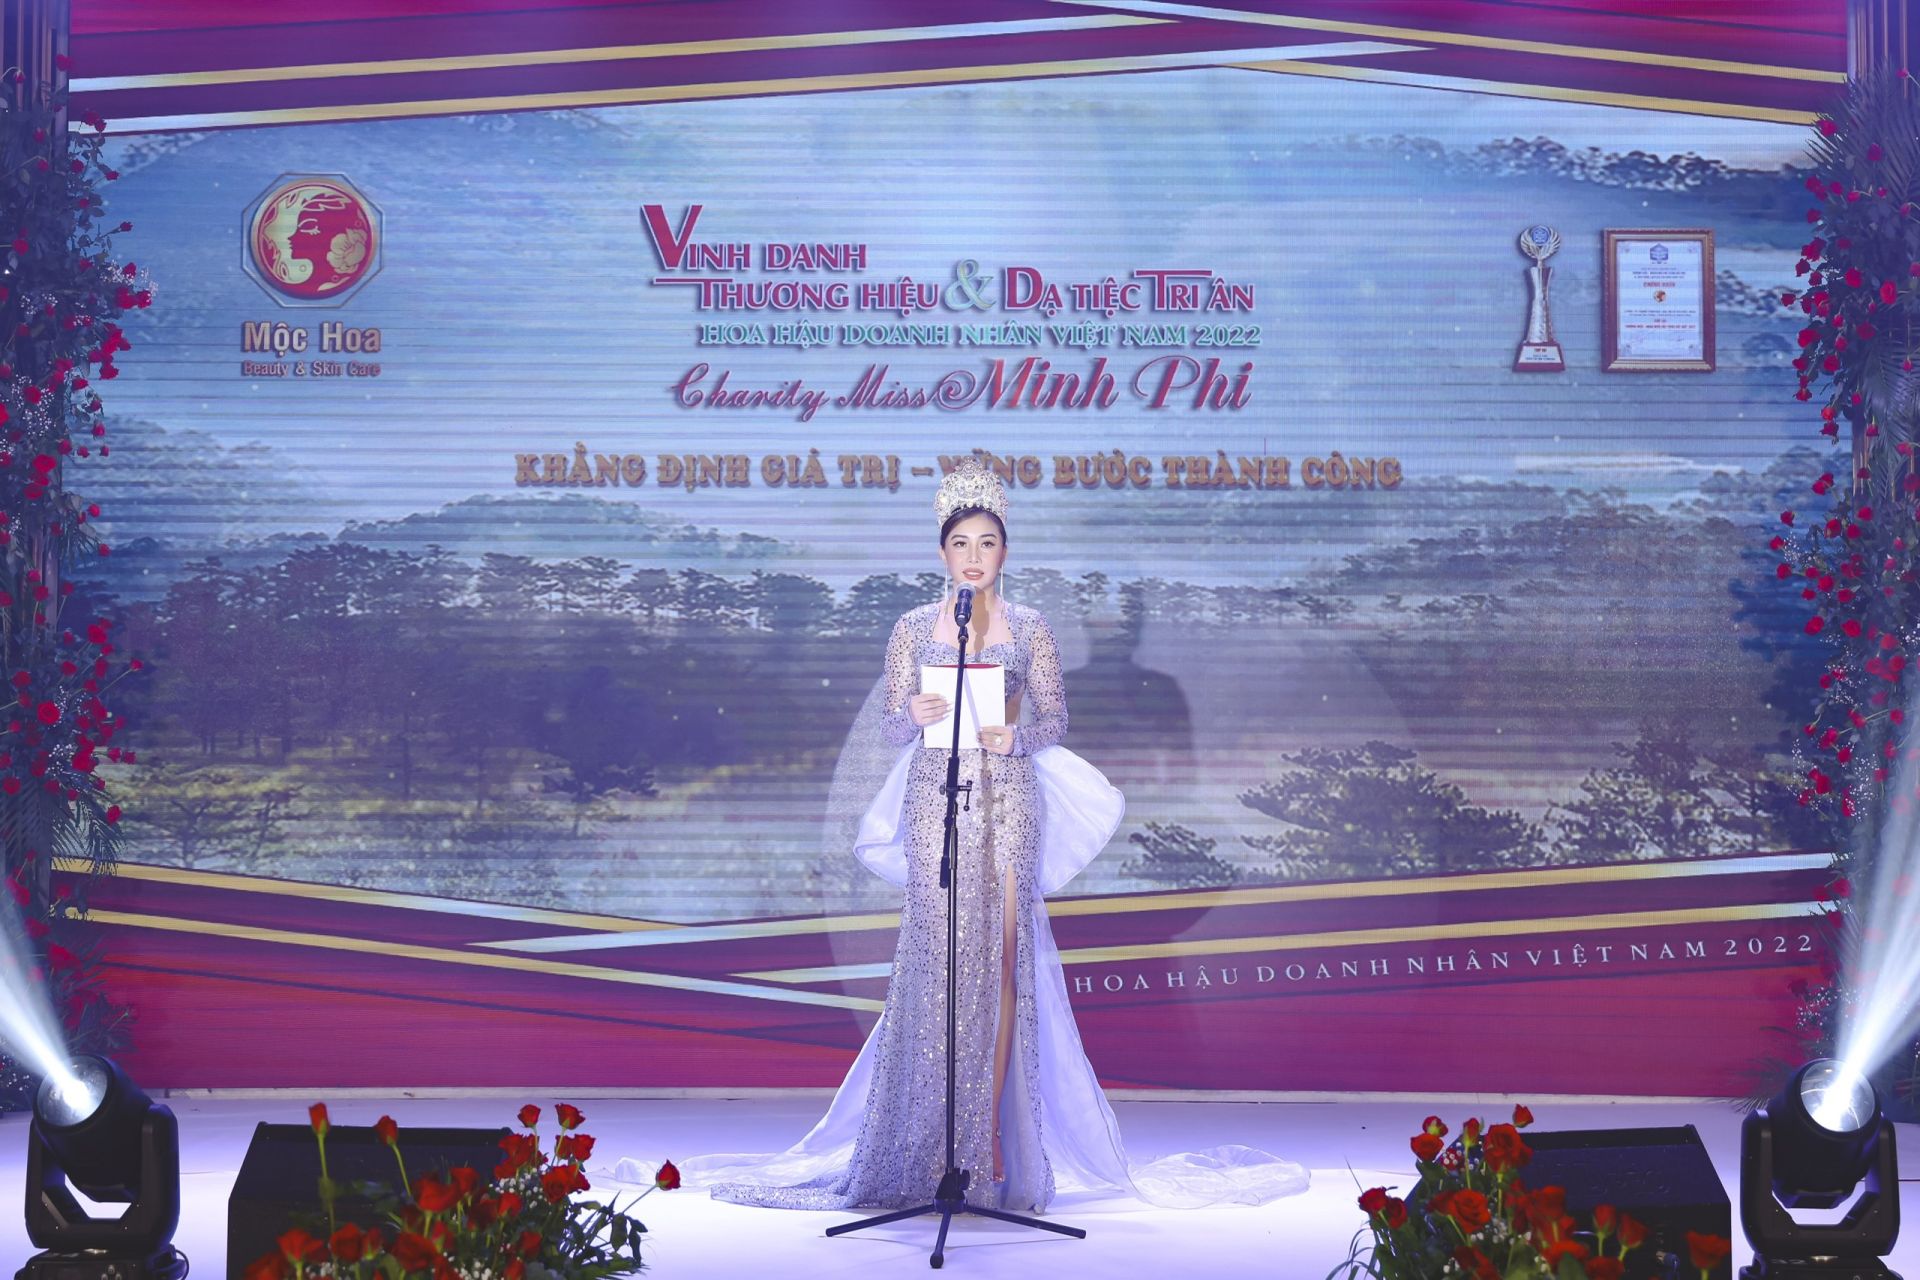 Hoa hậu thân thiện Phạm Thị Minh Phi người luôn có nhiều chương trình thiện nguyện đến với cộng đồng